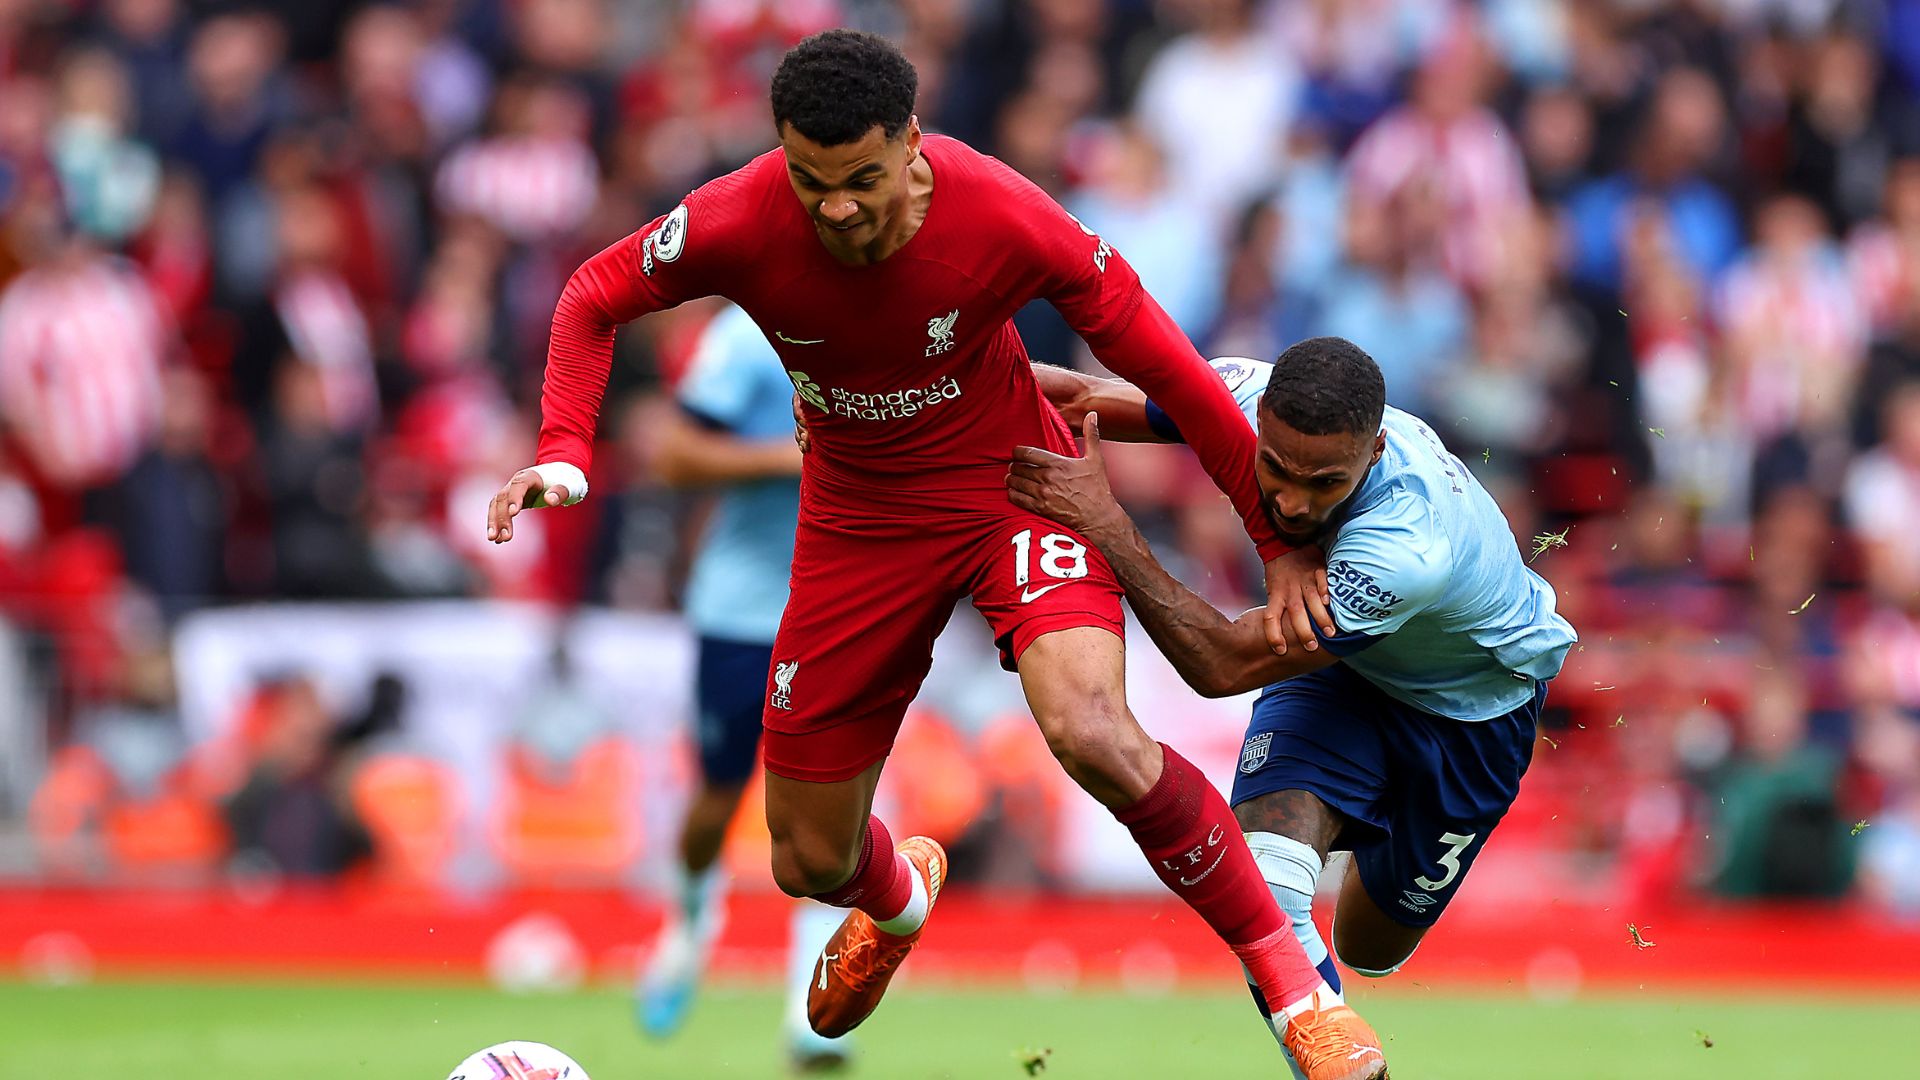 Jogo muito duro entre Liverpool e Brentford (Crédito: Getty Images)